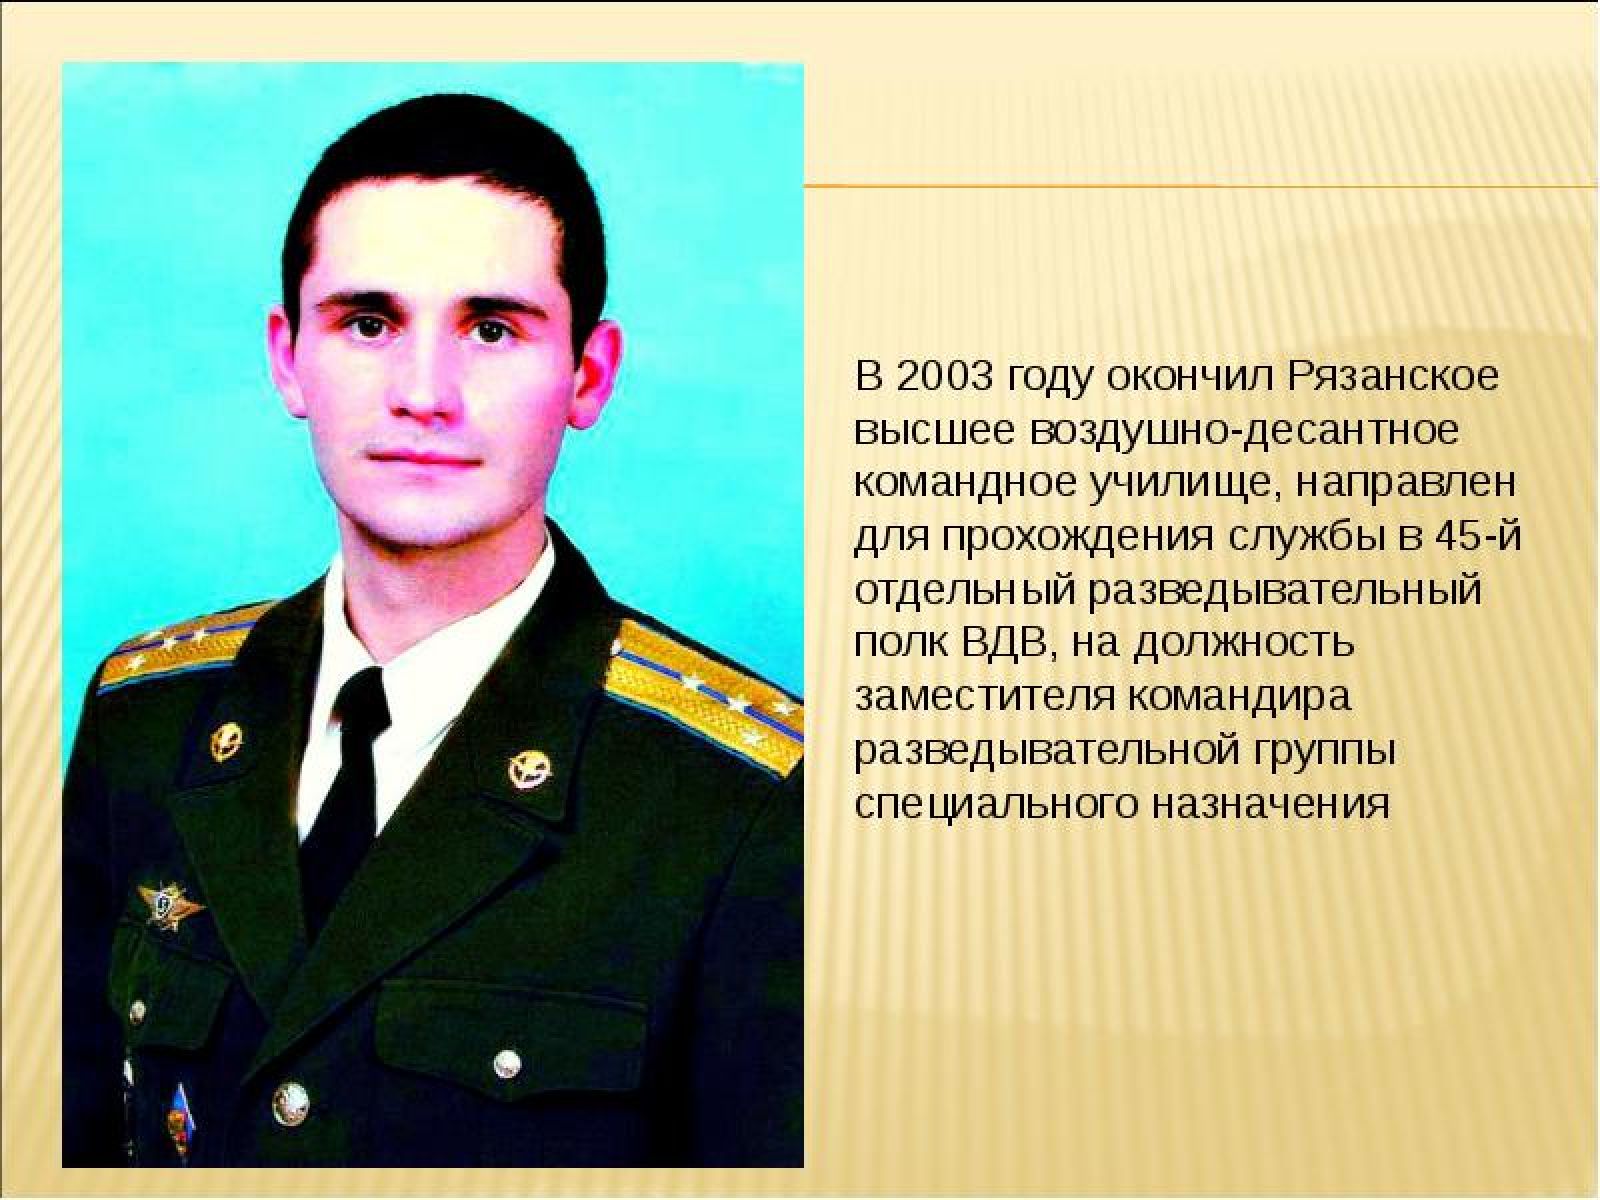 Дмитрий Васильевич Жидков герой Российской Федерации